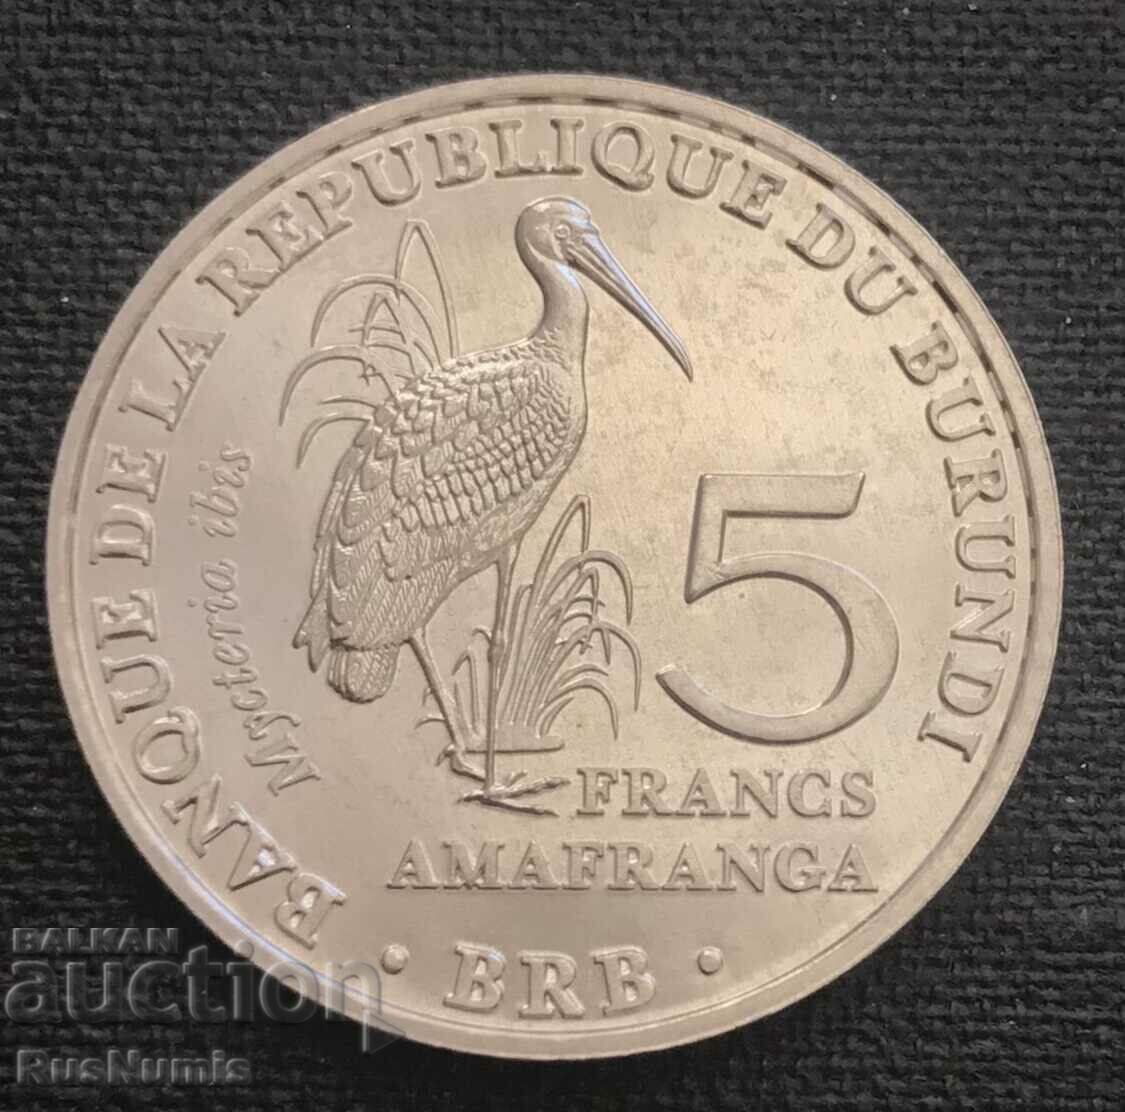 Бурунди.5 франка 2014 г.Micteria ibis.UNC.